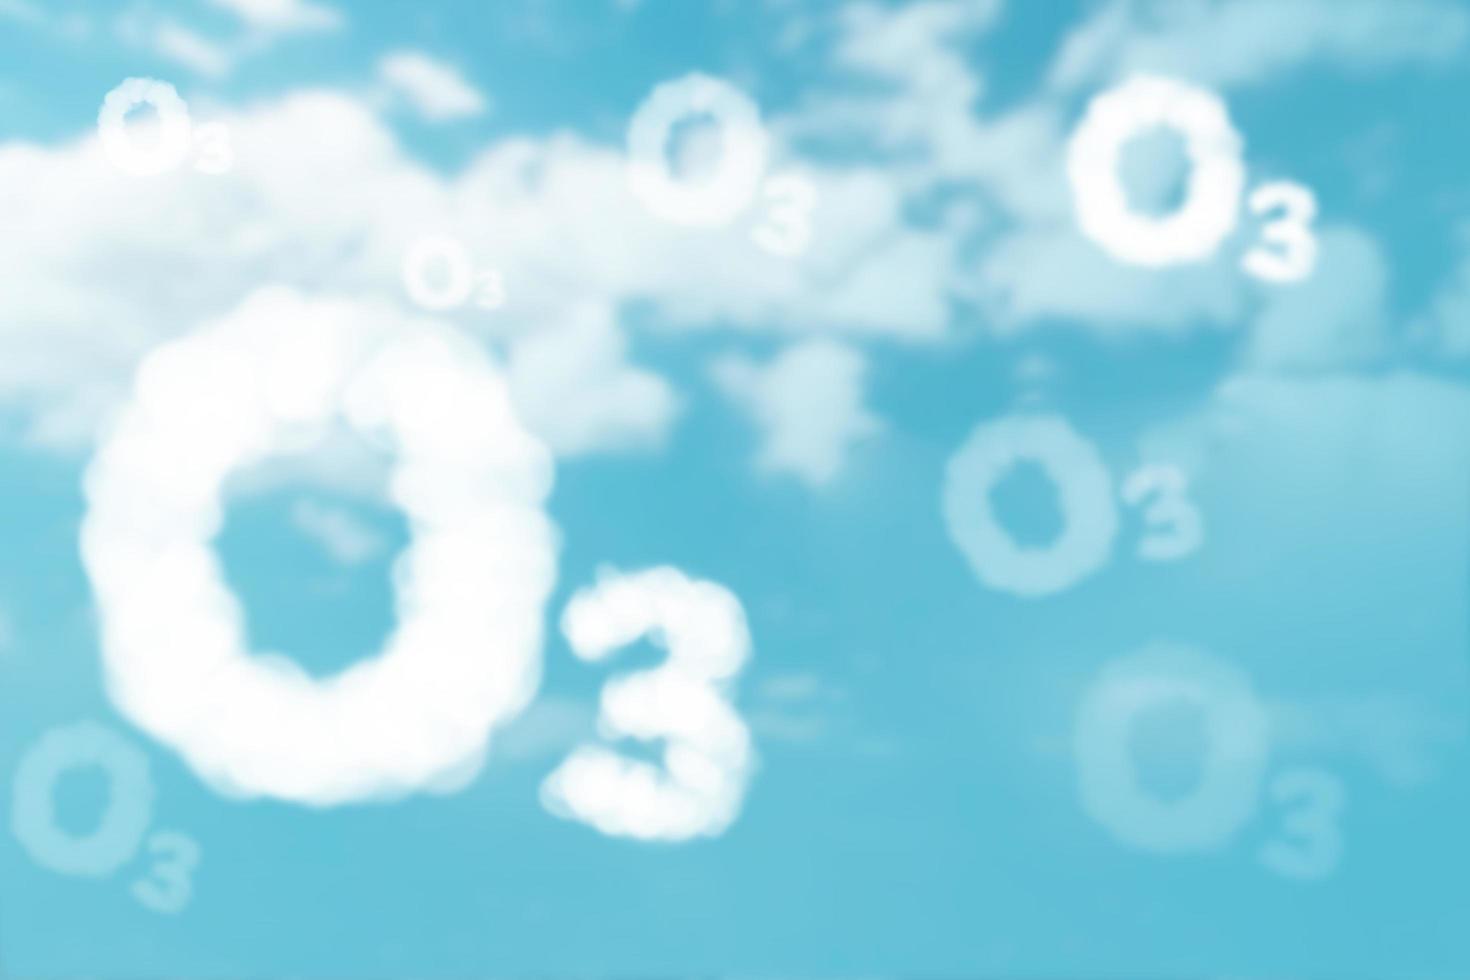 nuvola bianca nel testo o3 su sfondo blu cielo per la giornata mondiale dell'ozono foto